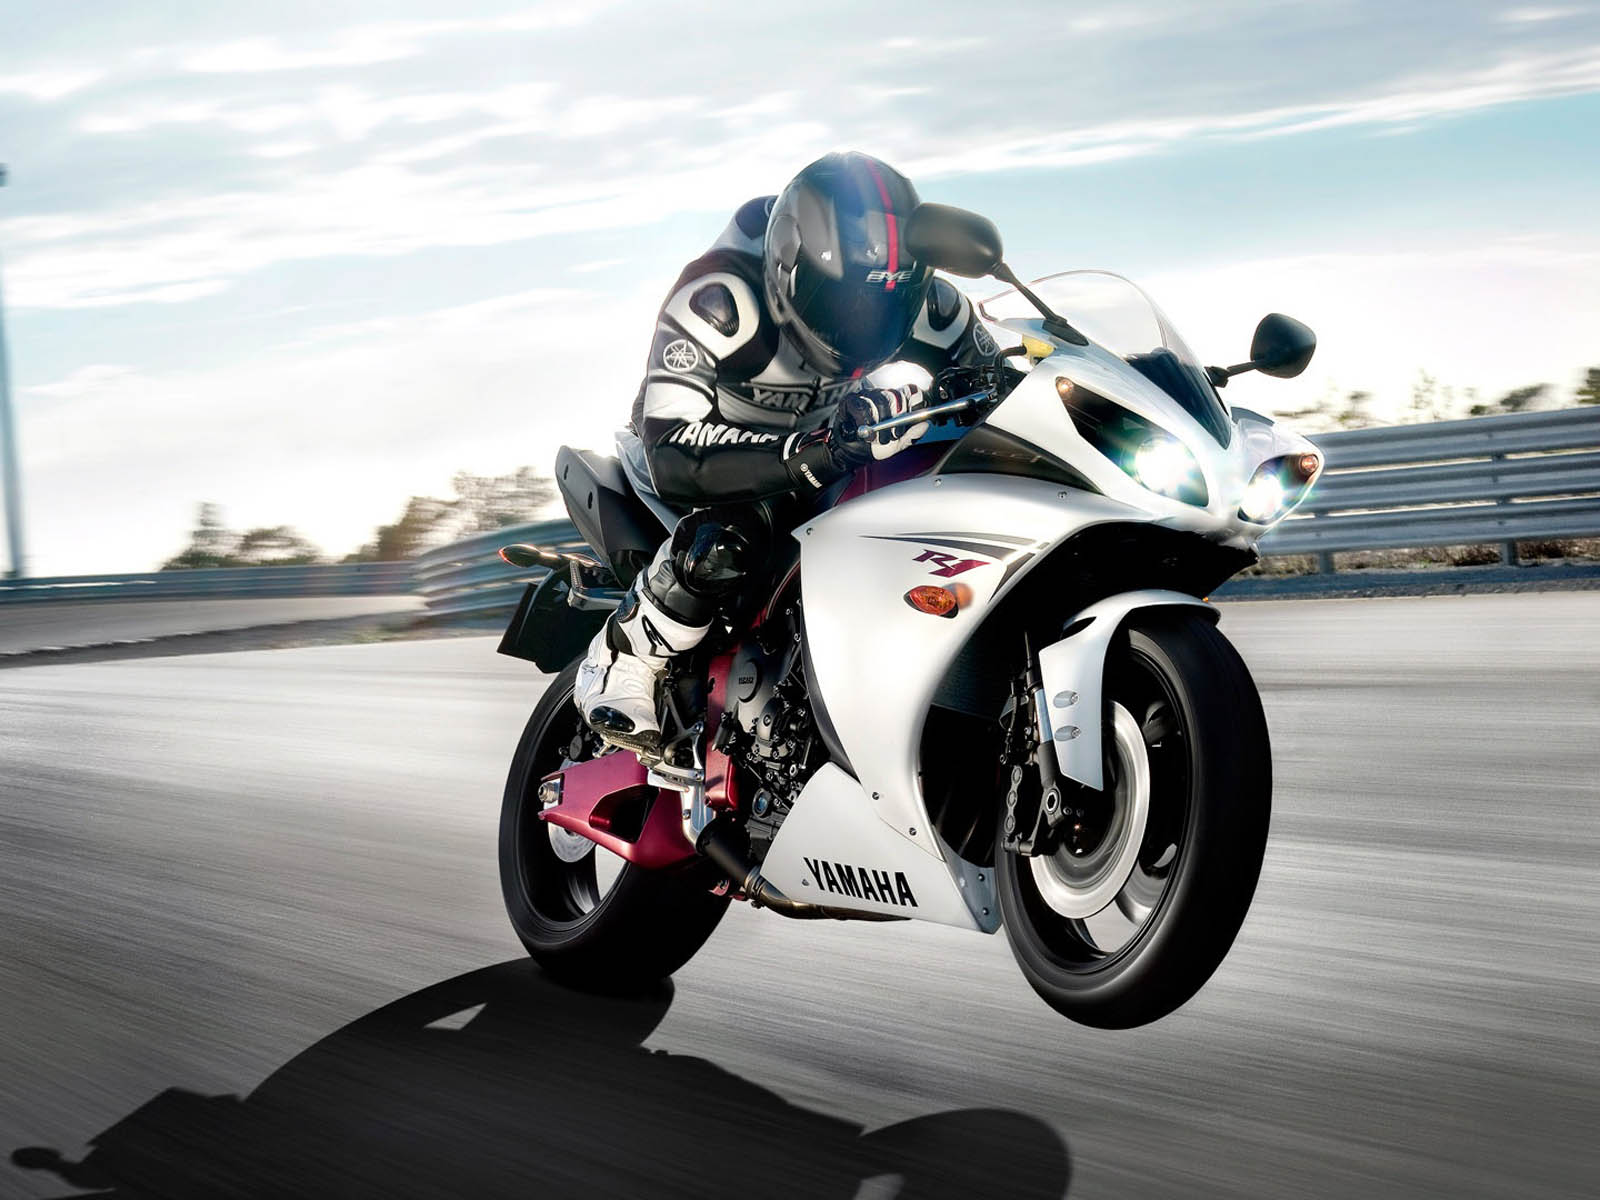 rider wallpaper,land vehicle,motorcycle,vehicle,motorcycle racer,superbike racing